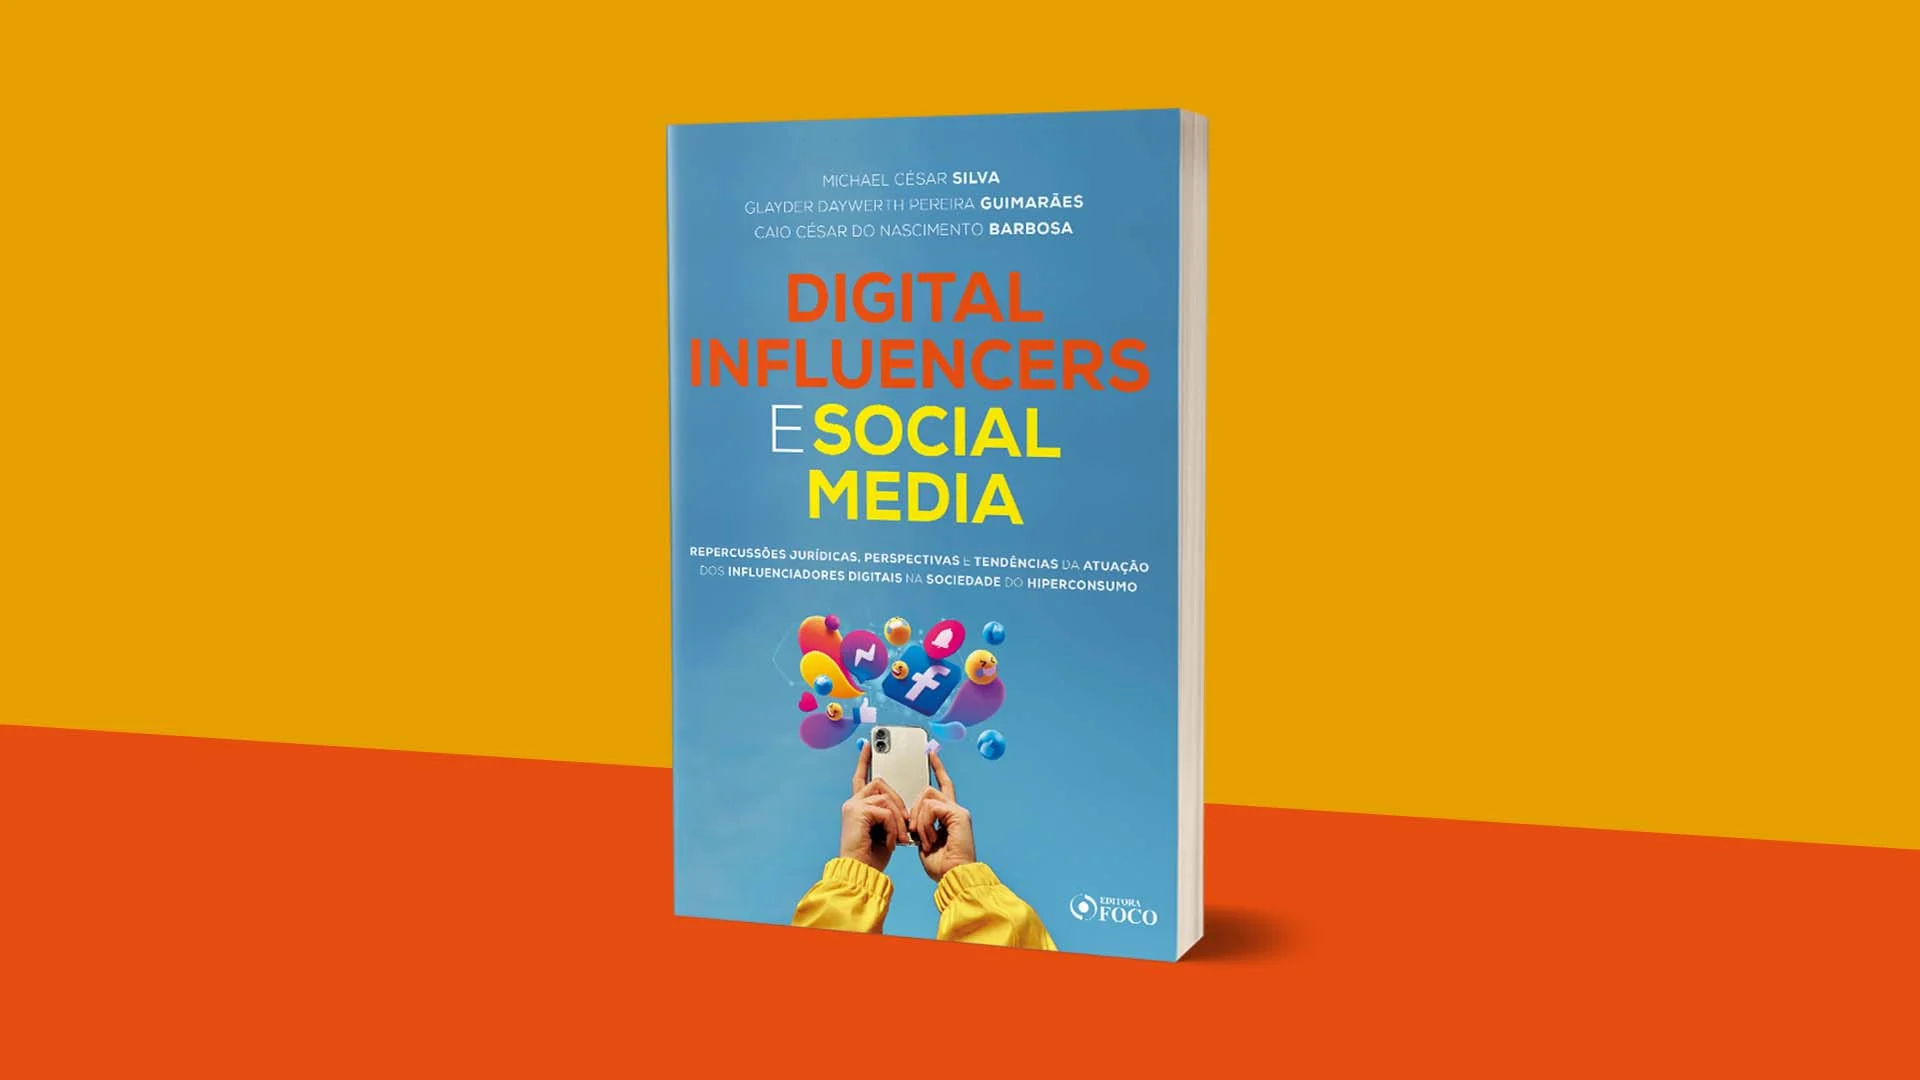 Digital-Influencers-e-Social-Media